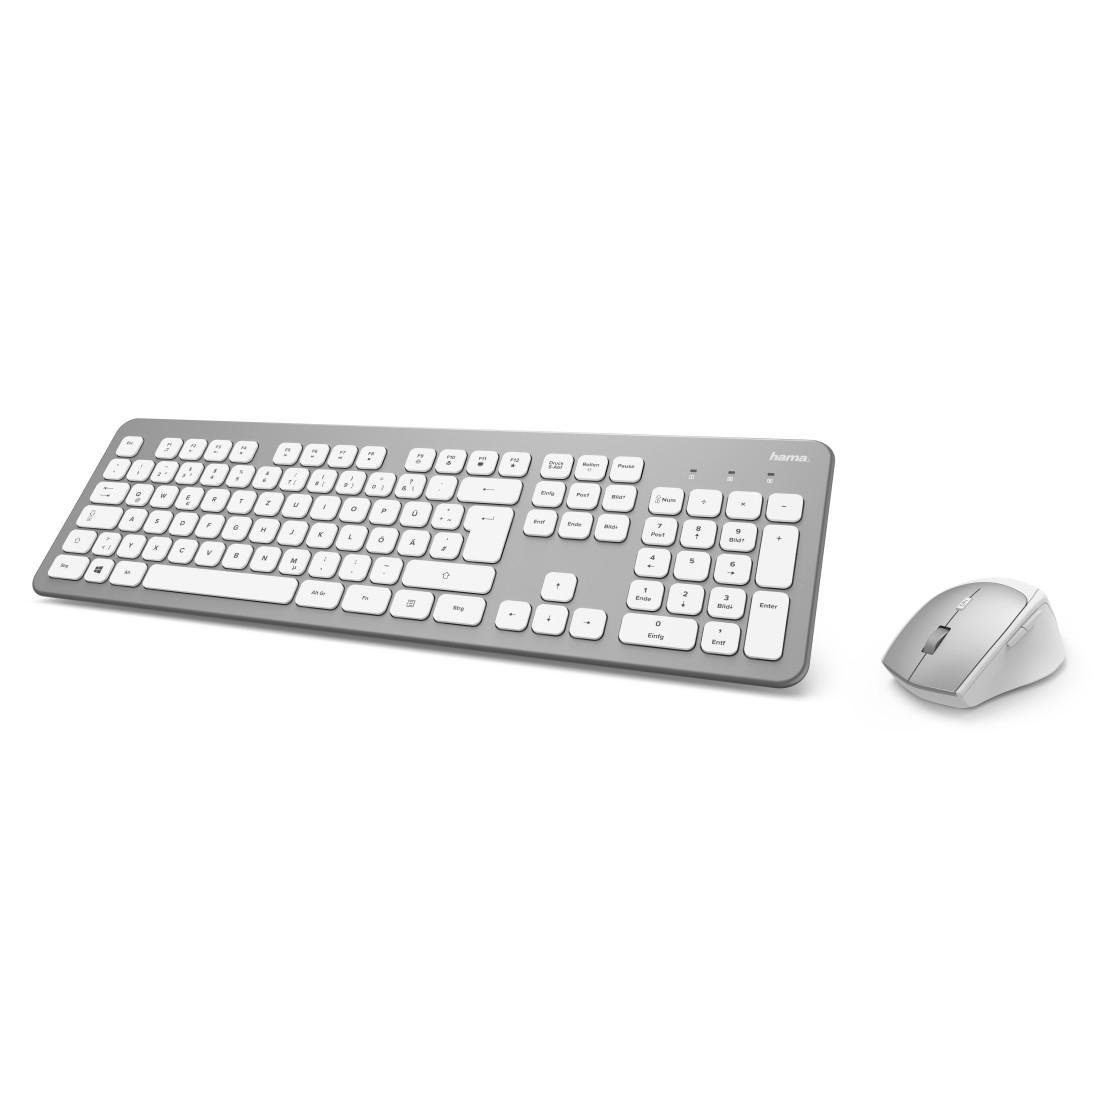 Funktastatur-/Maus-Set und "KMW-700" Tastatur- Tastatur/Maus-Set Maus-Set weiß Hama